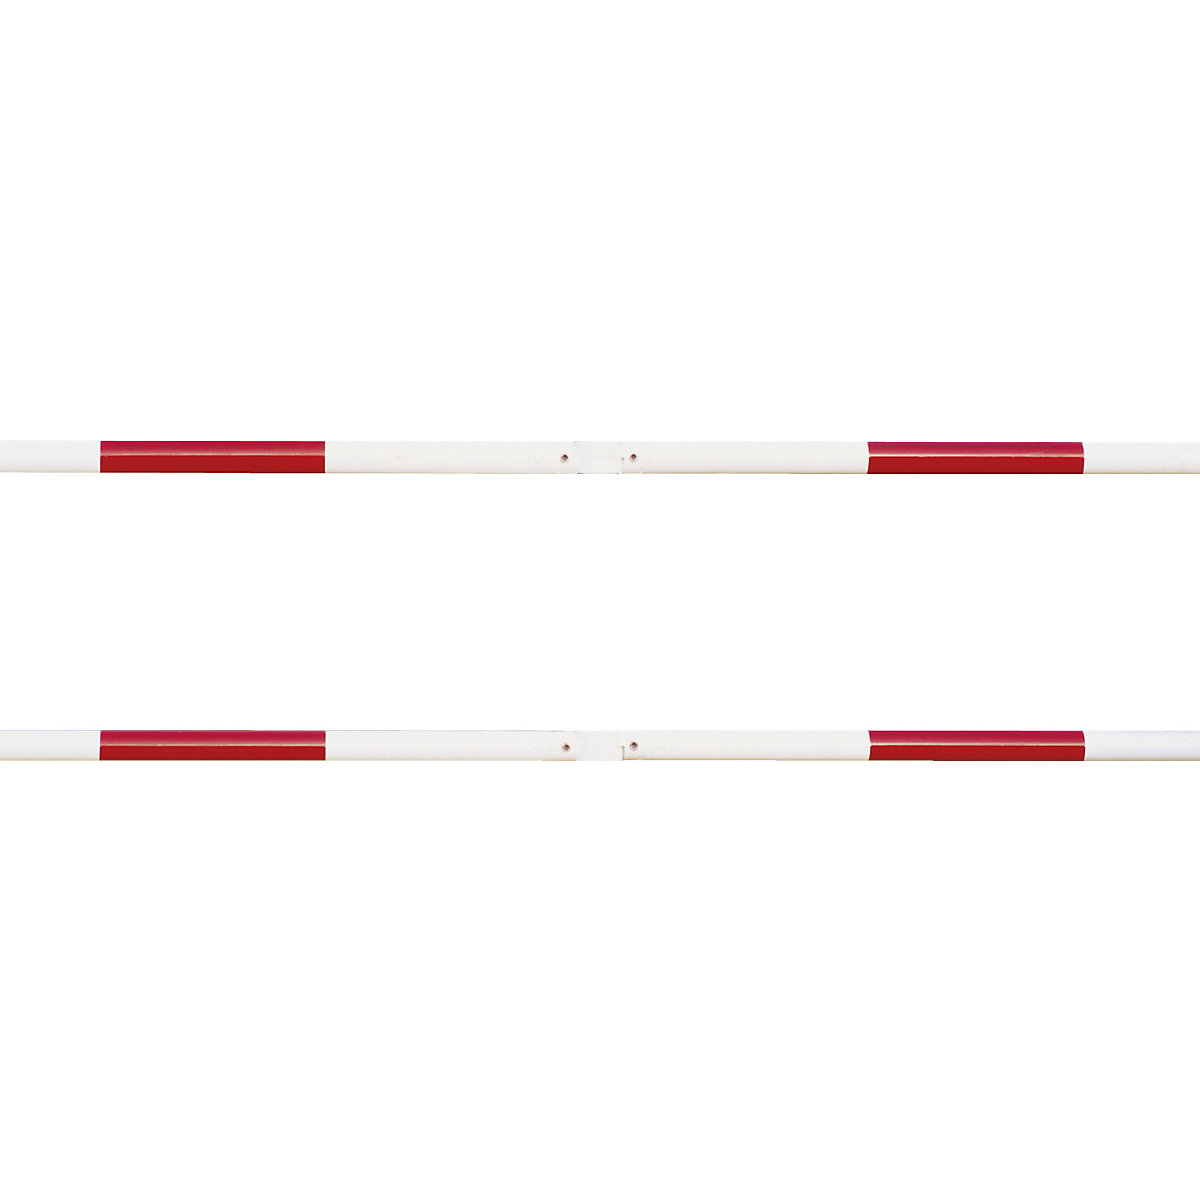 Balustradesysteem, dwarsbuis-Ø 60 mm, rood / wit, lengte 1000 mm